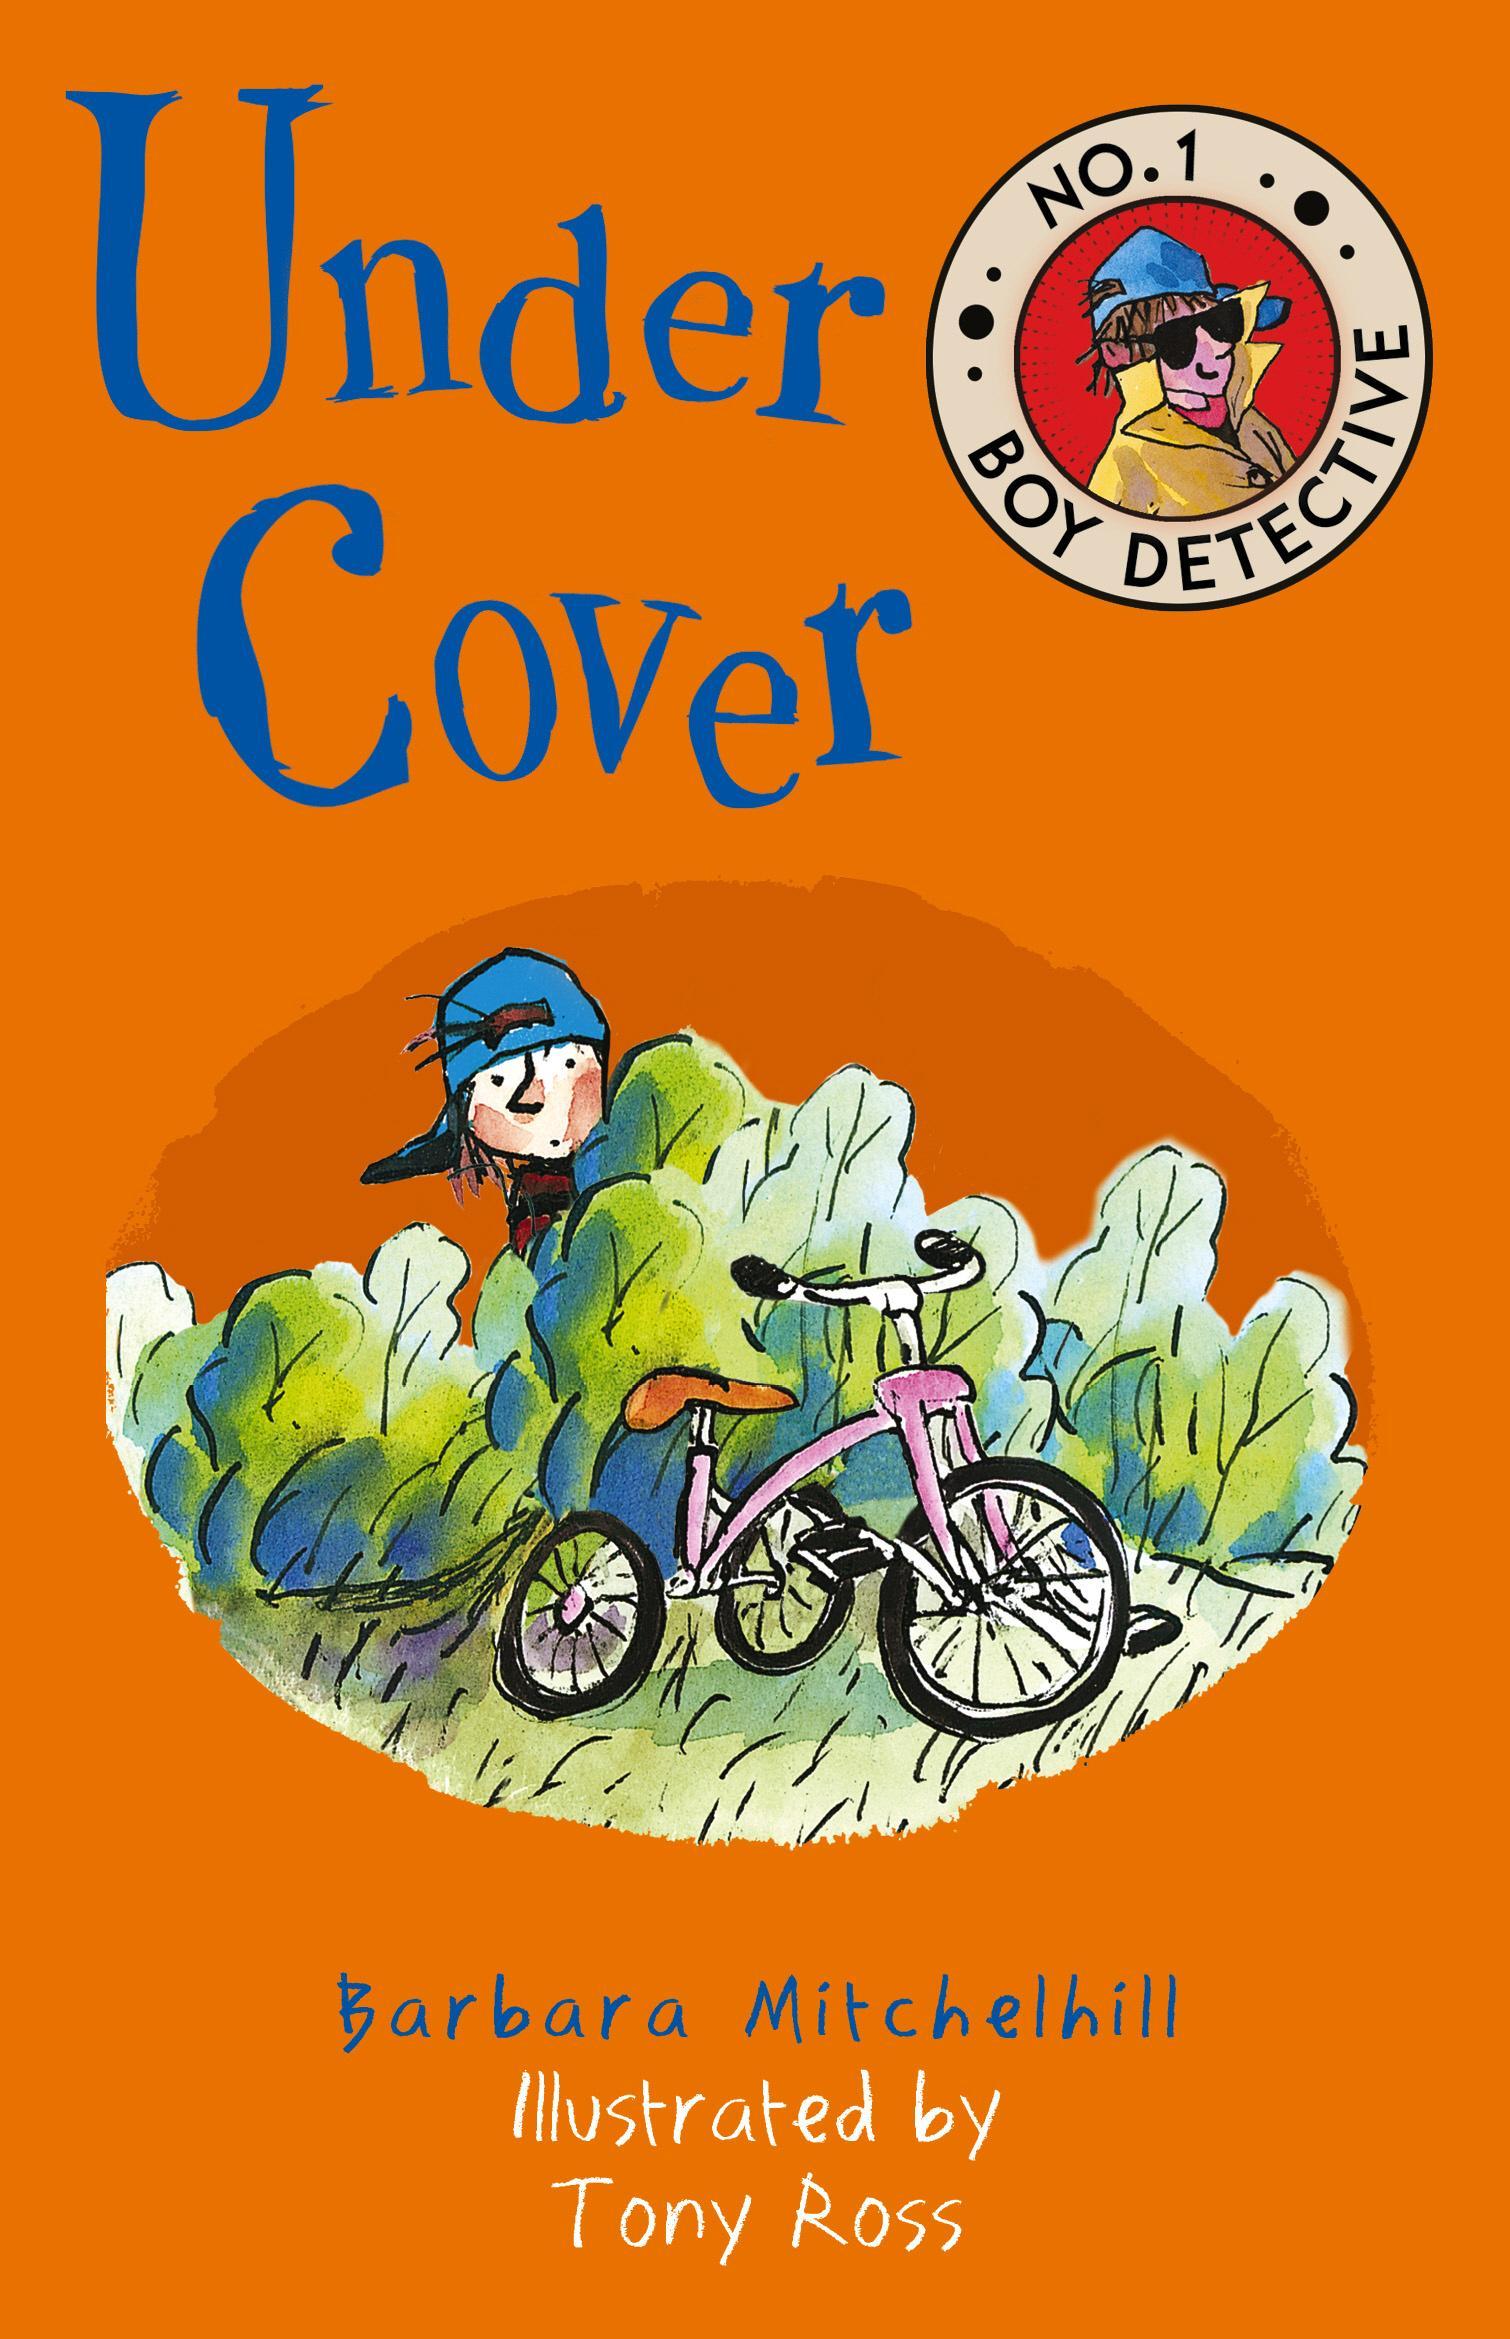 Under Cover (No. 1 Boy Detective)